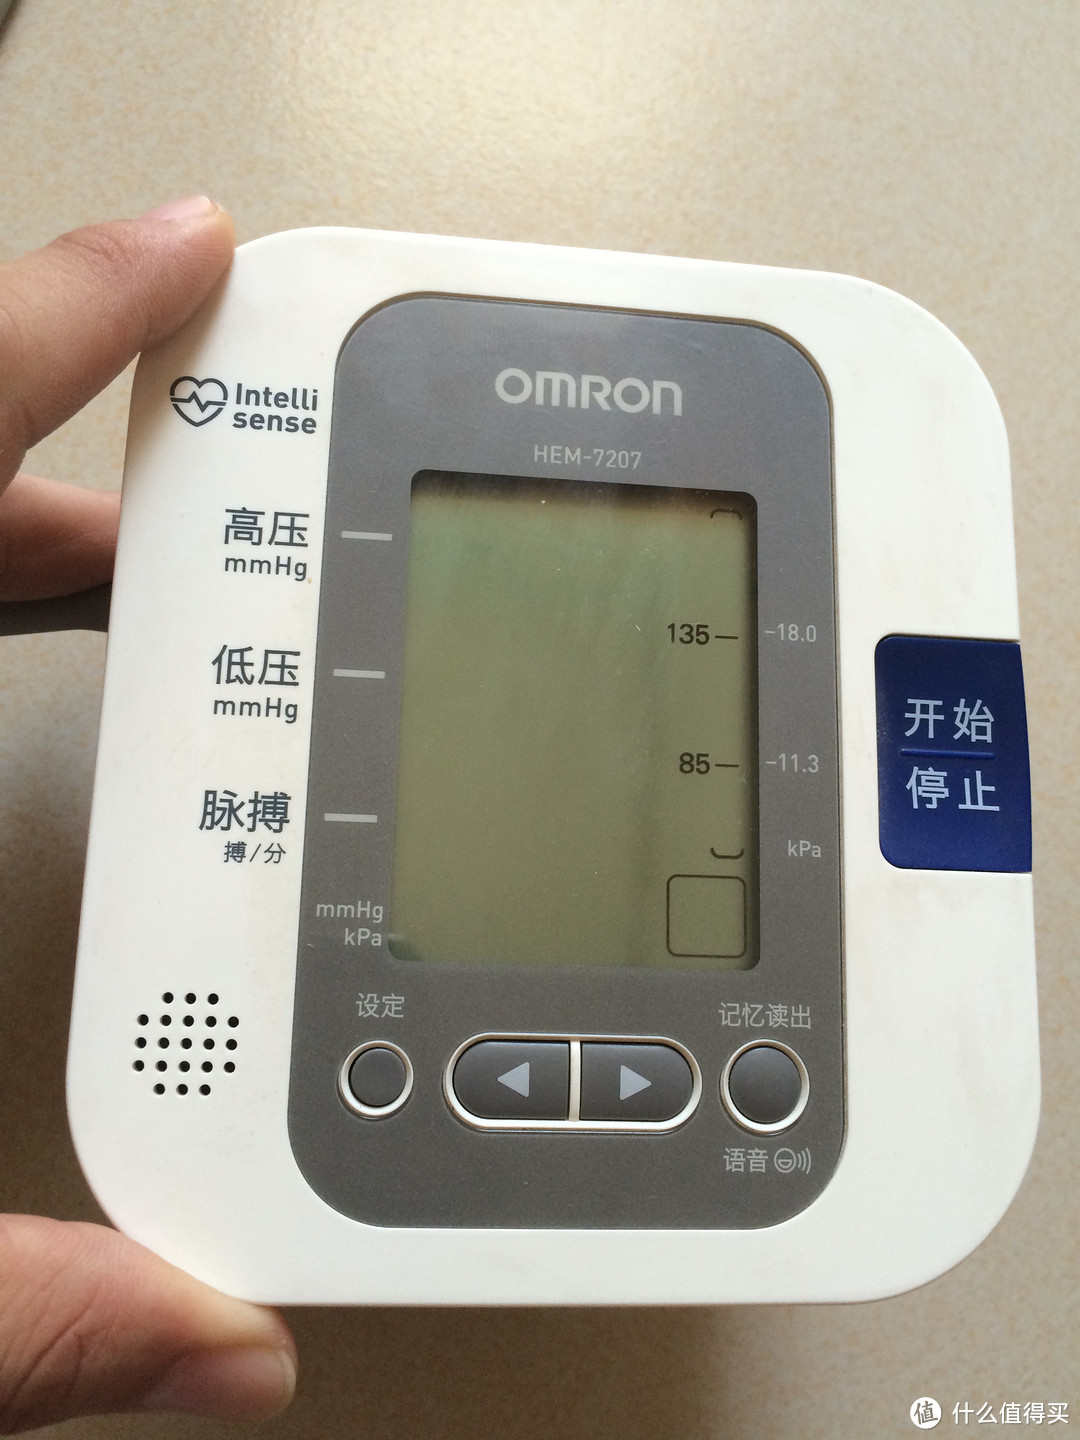 OMRON 欧姆龙 HEM-7207 电子血压计使用感受和选购思路